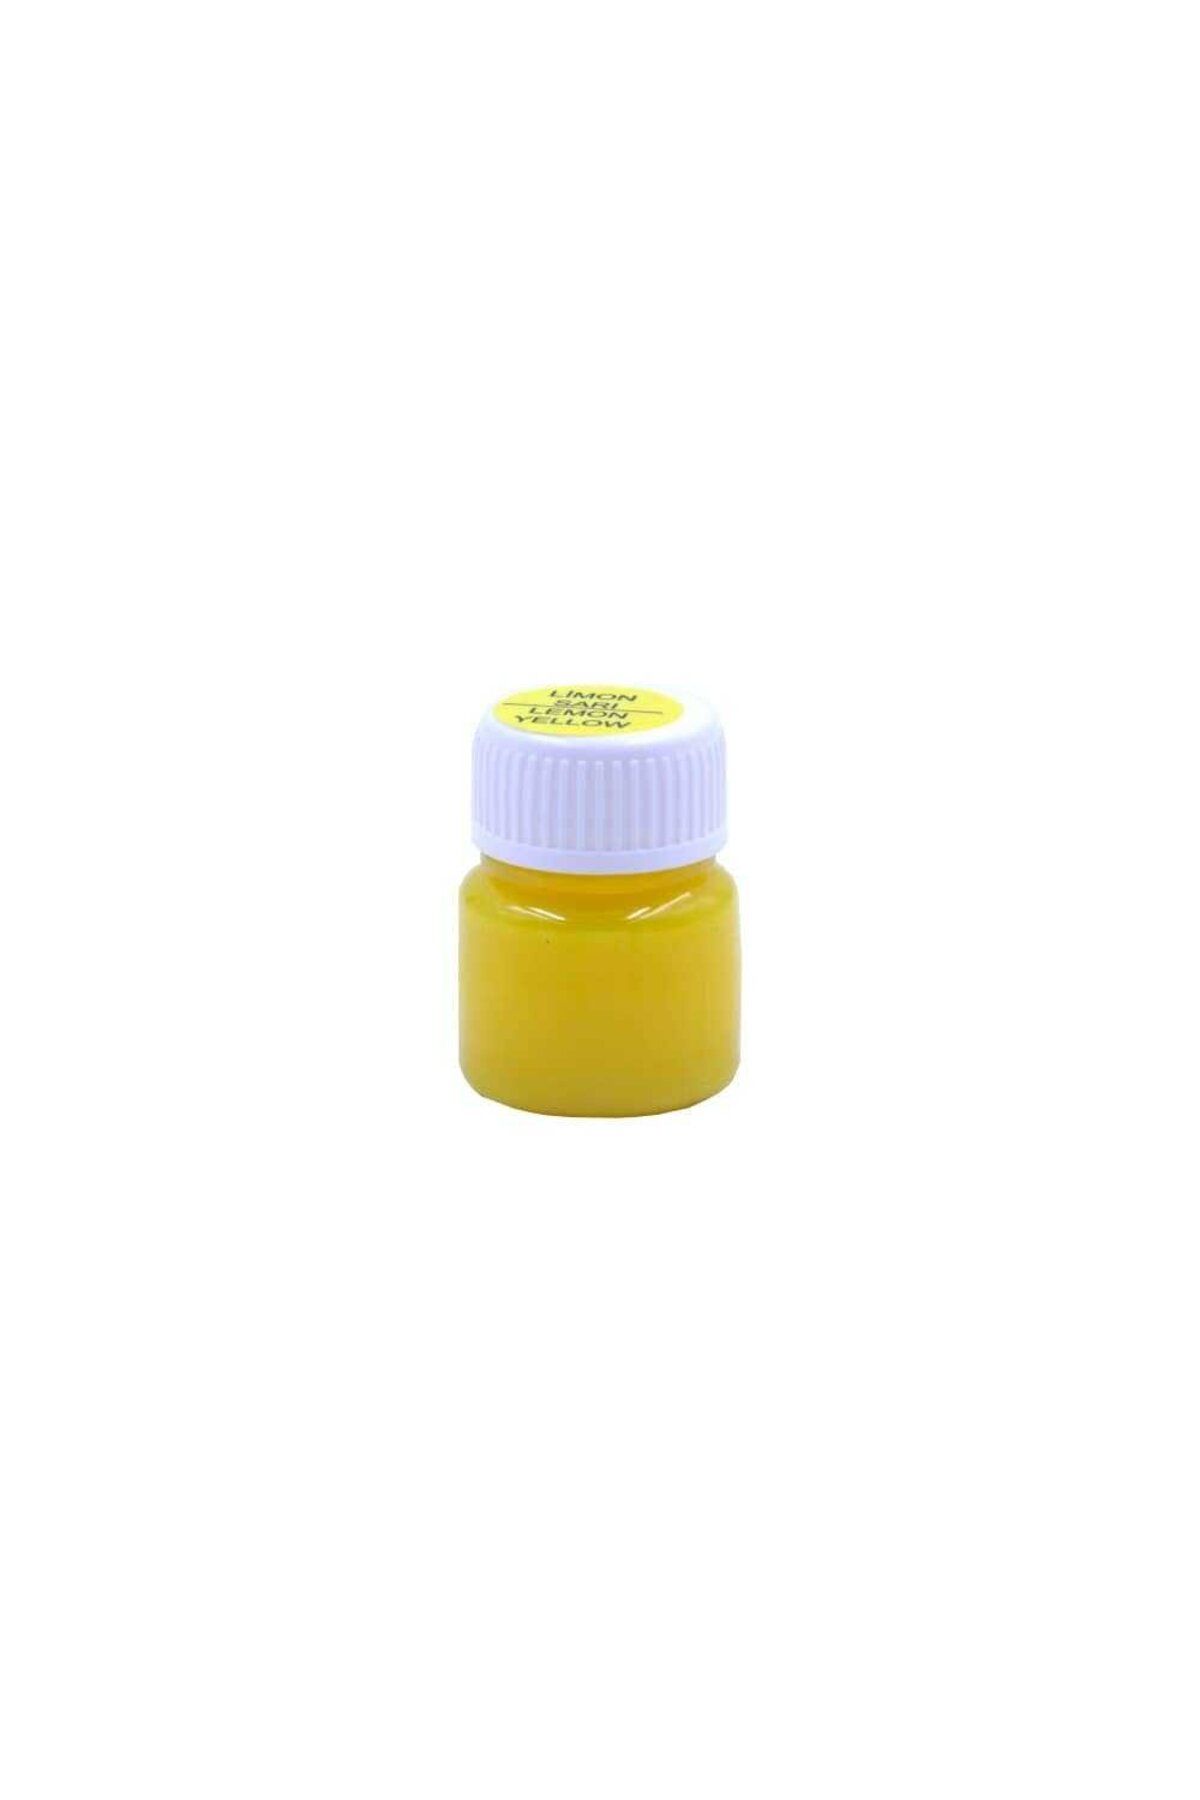 Südor Cam Boyası Su Bazlı Tek Renk Limon Sarı